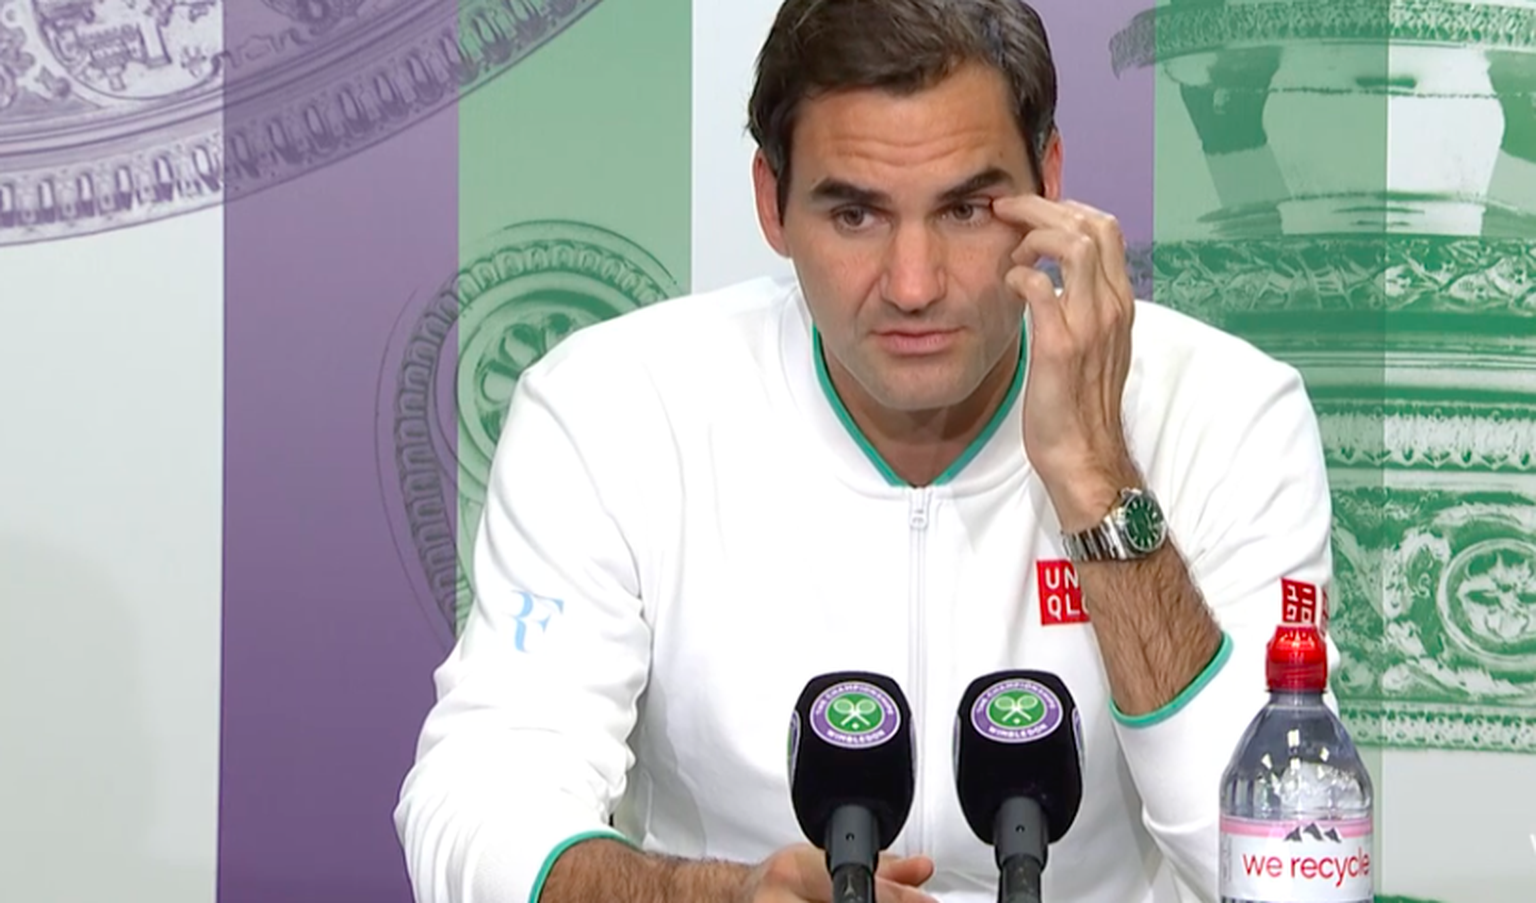 Roger Federer an der Medienkonferenz nach dem Ausscheiden.